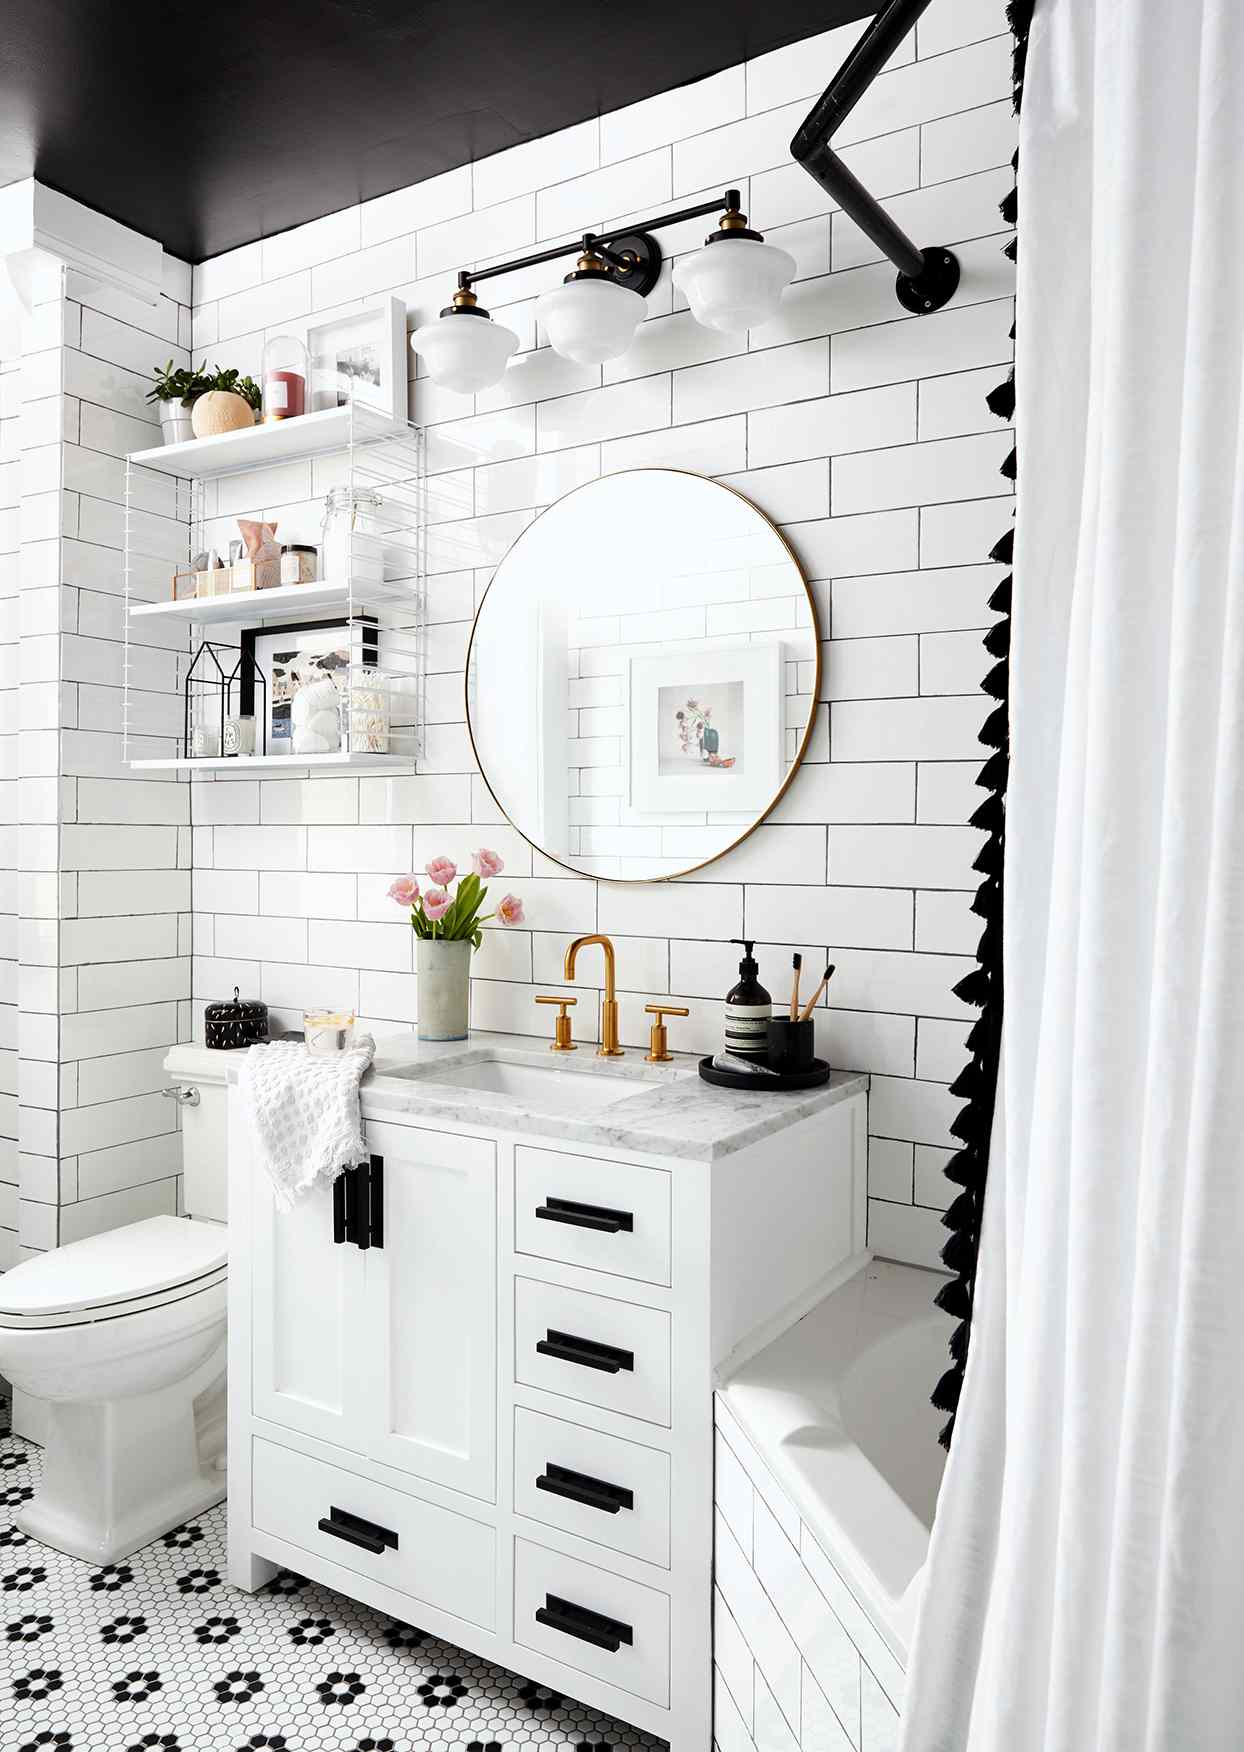 18 Small Bathroom Storage Ideas That, Small Bathroom Cabinet Storage Ideas